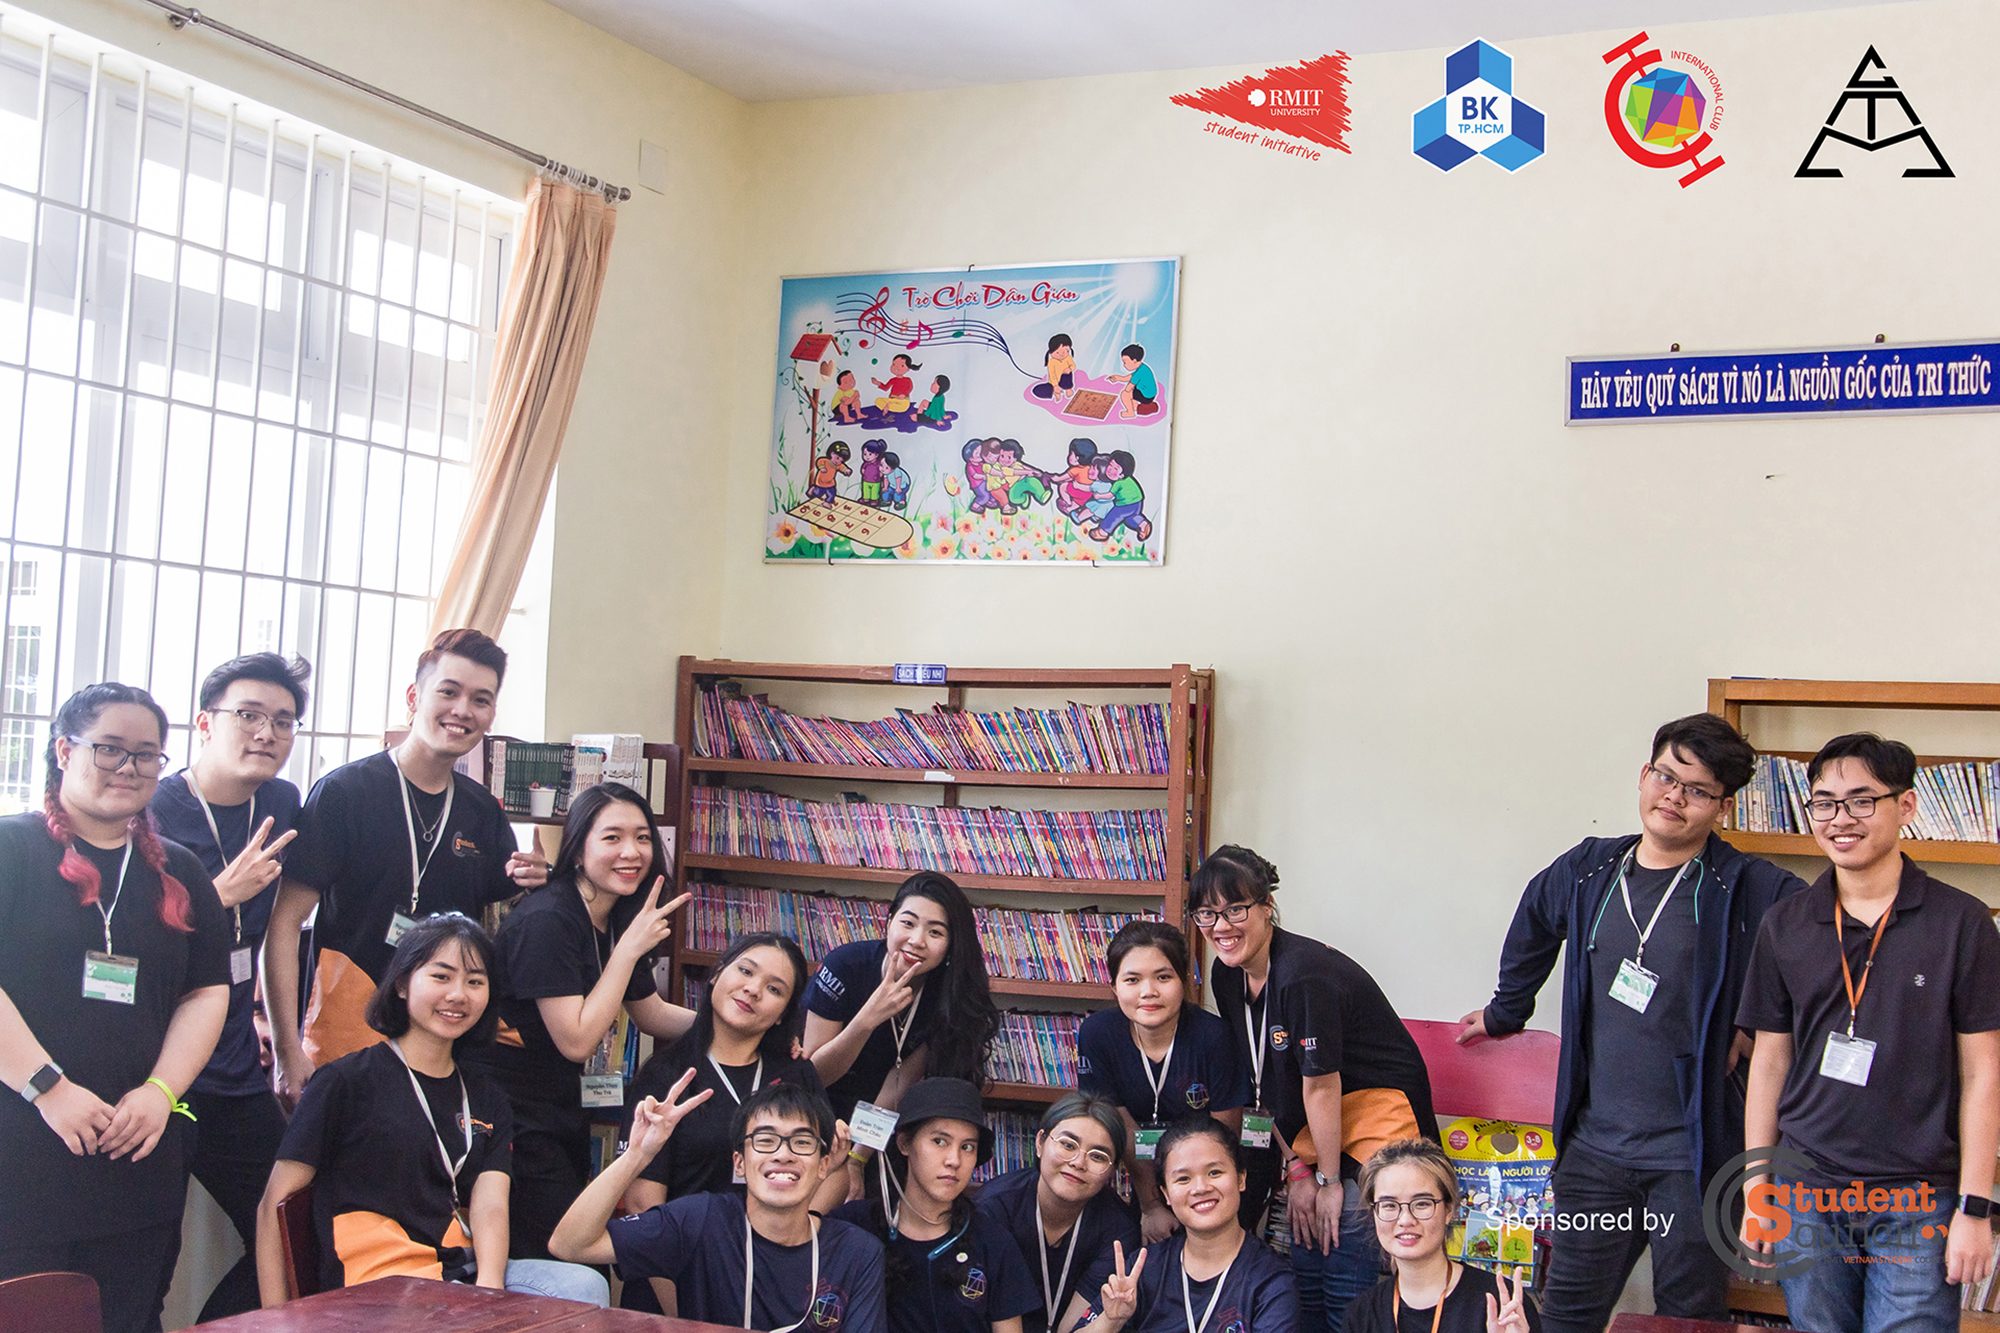 Sau khi lắp ráp xong, các bạn sinh viên RMIT đã lấp đầy kệ sách với sách và truyện tranh quyên góp được cho các em học sinh trường tiểu học Trần Văn Quan.